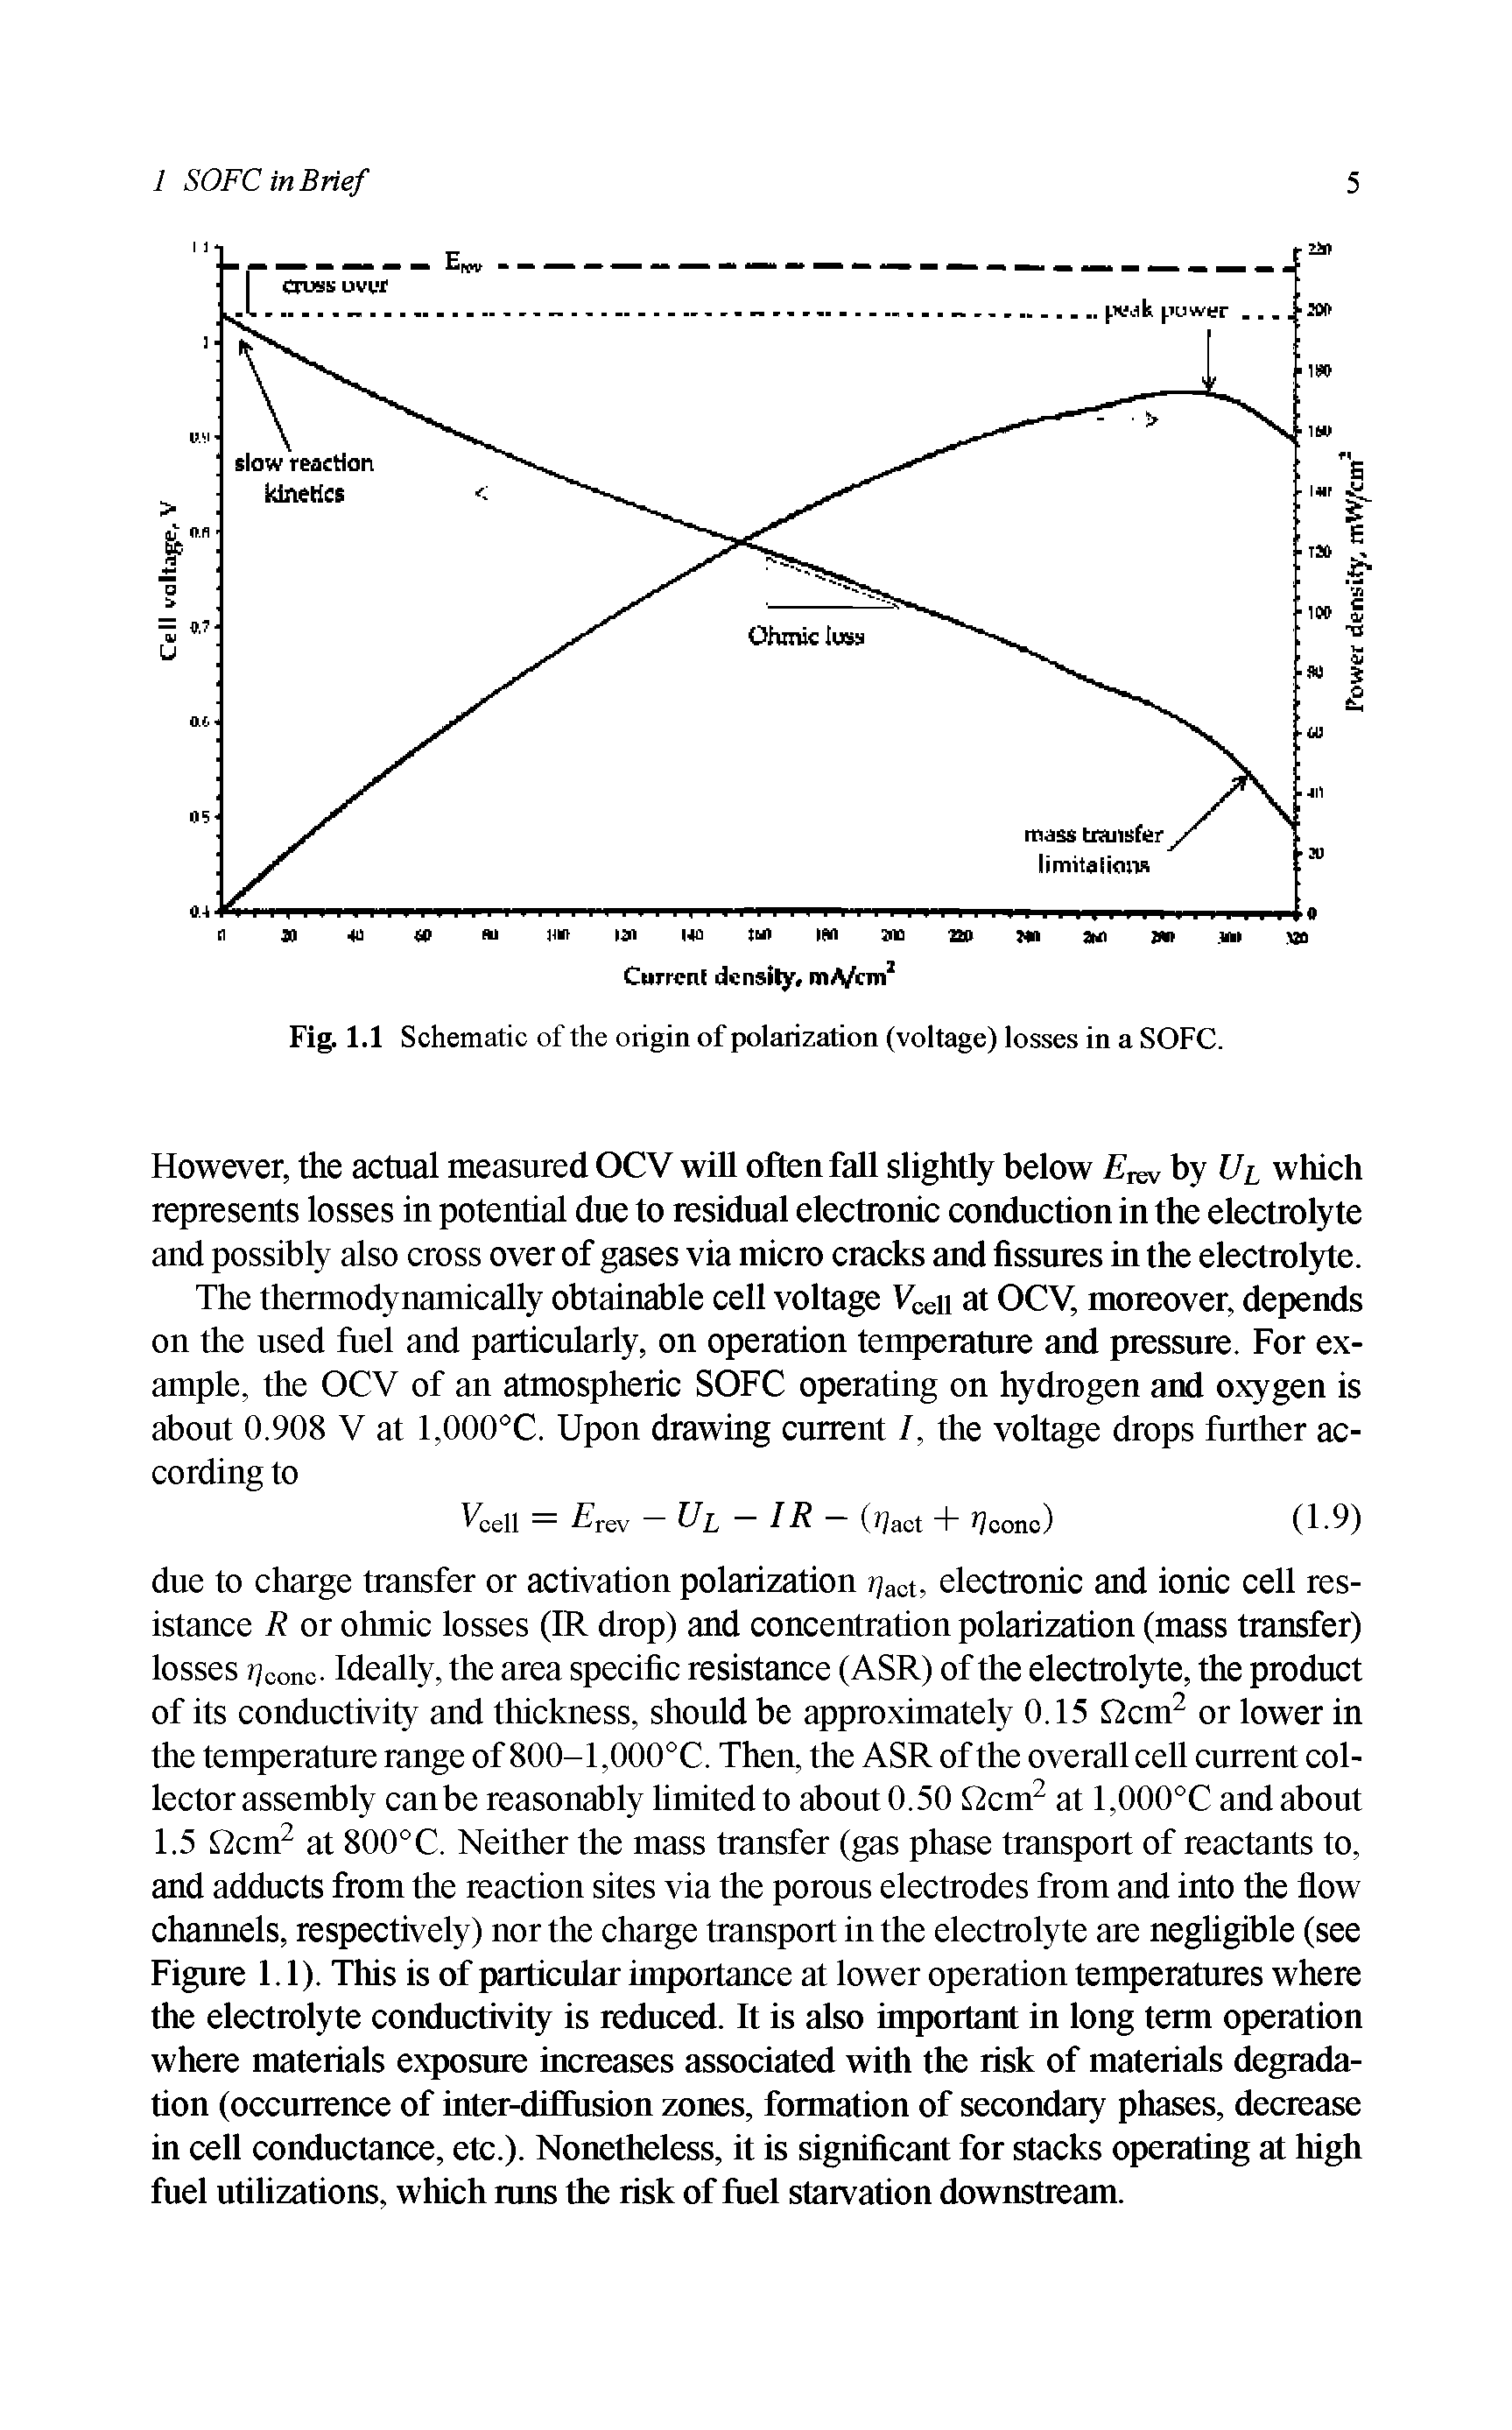 Fig. 1.1 Schematic of the origin of polarization (voltage) losses in a SOFC.